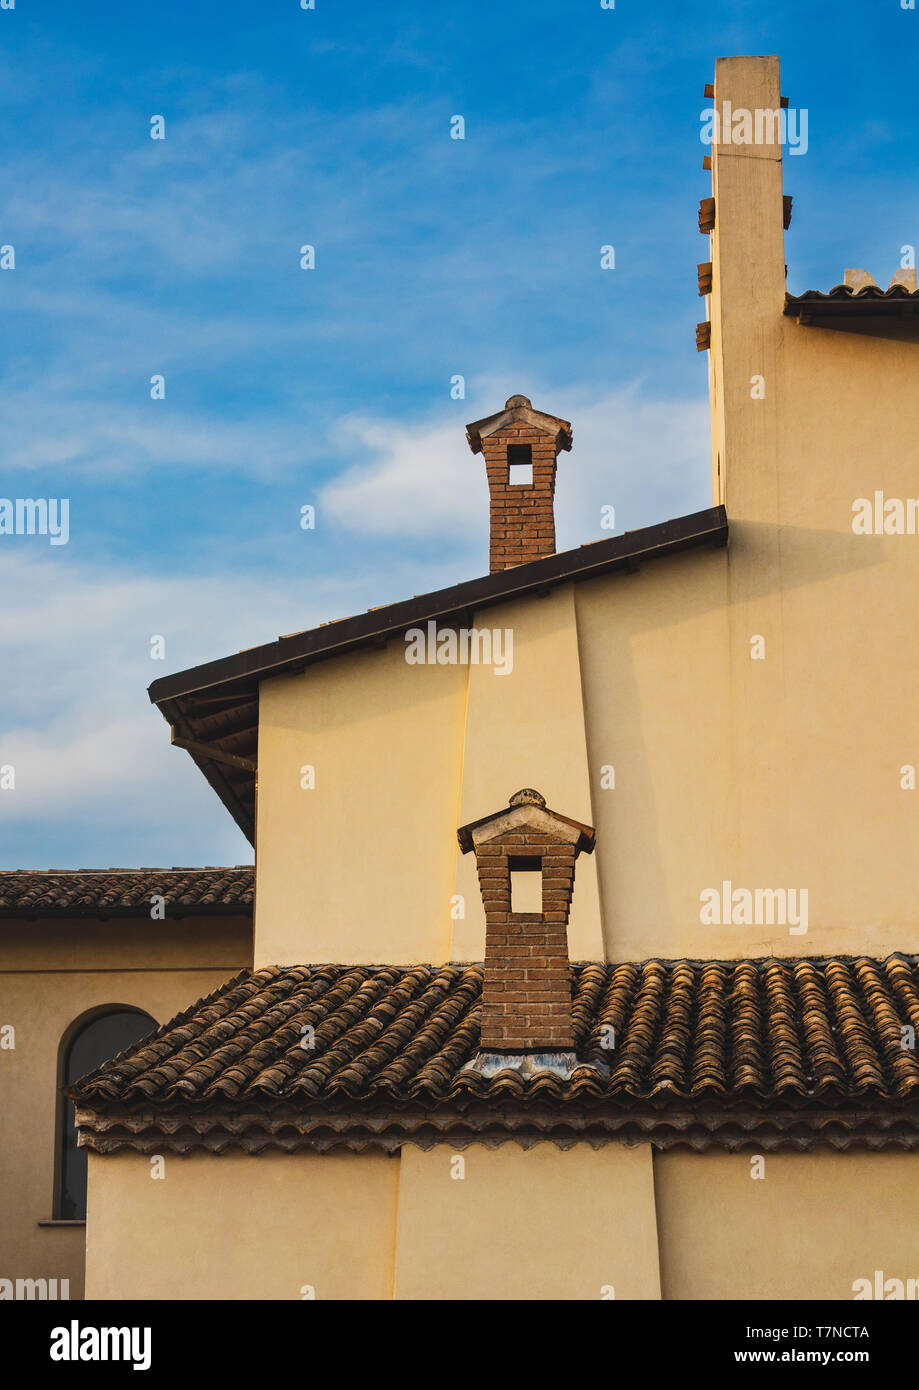 Basso angolo vista della facciata della casa vecchia architettura design fashione, camino e tetto tegola Foto Stock